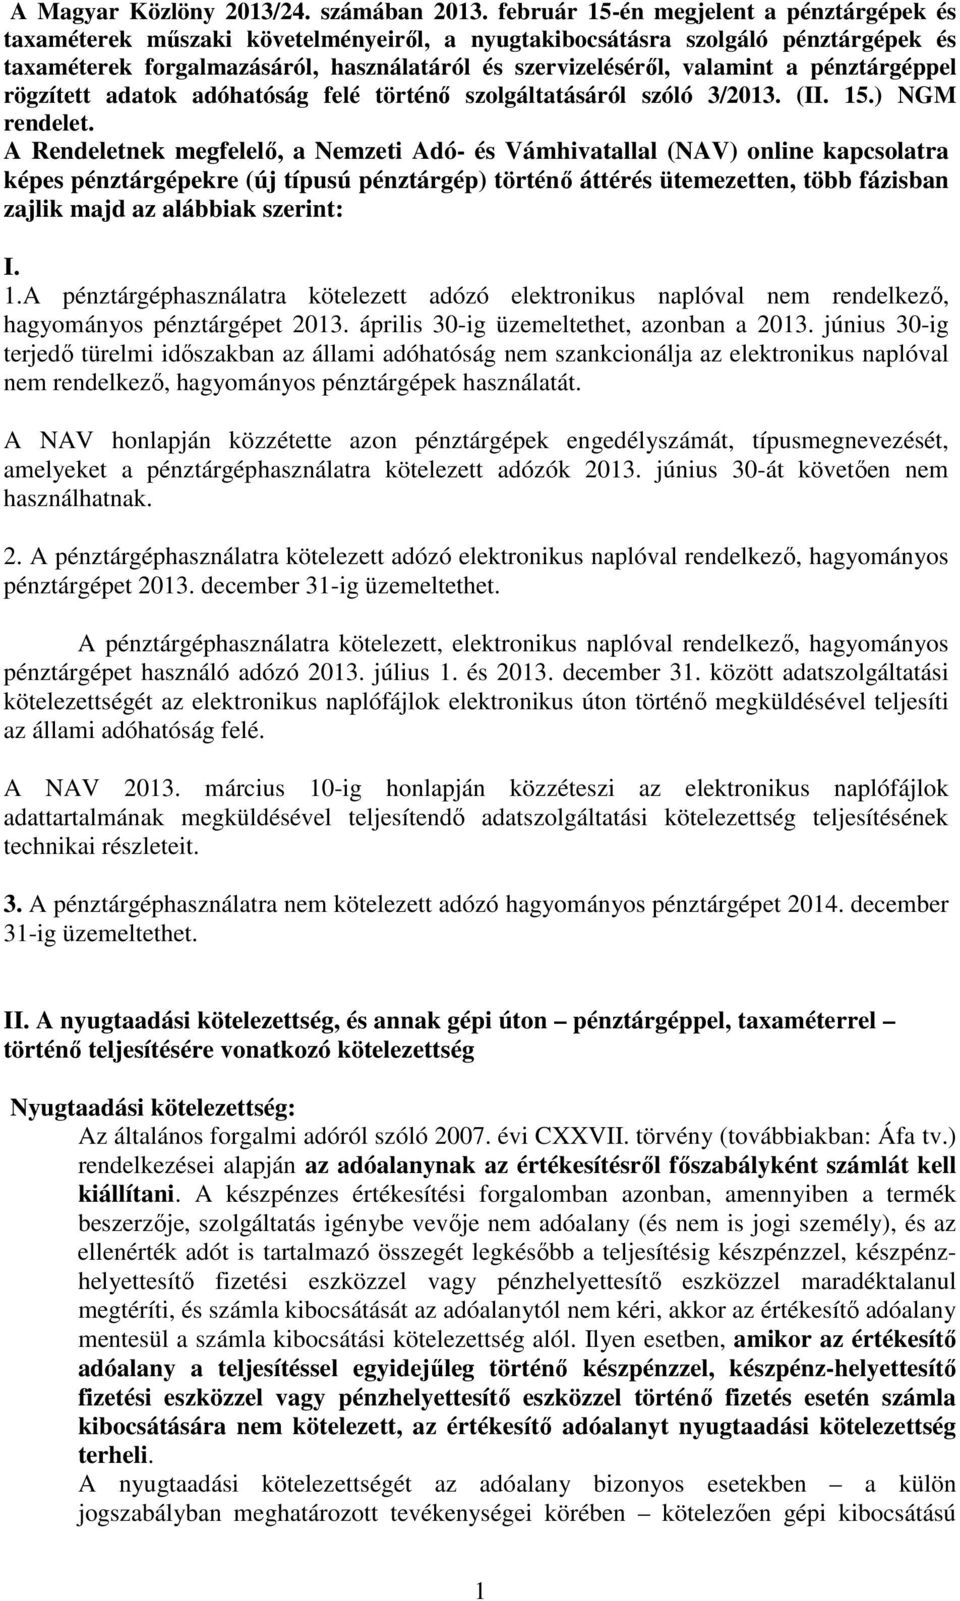 pénztárgéppel rögzített adatok adóhatóság felé történı szolgáltatásáról szóló 3/2013. (II. 15.) NGM rendelet.